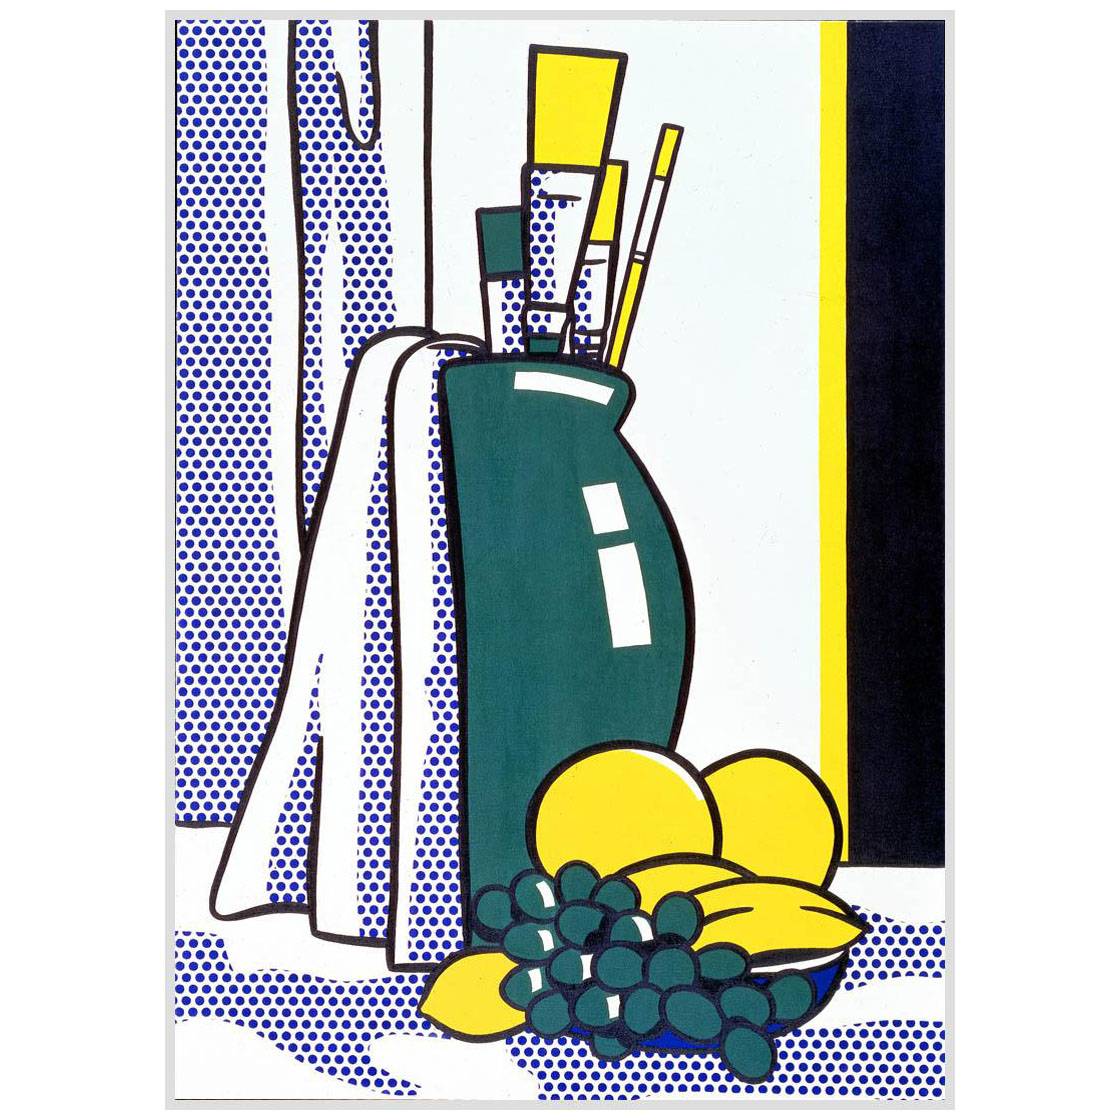 Roy Lichtenstein. Still Life with Green Vase. 1972. Whitney Museum NY